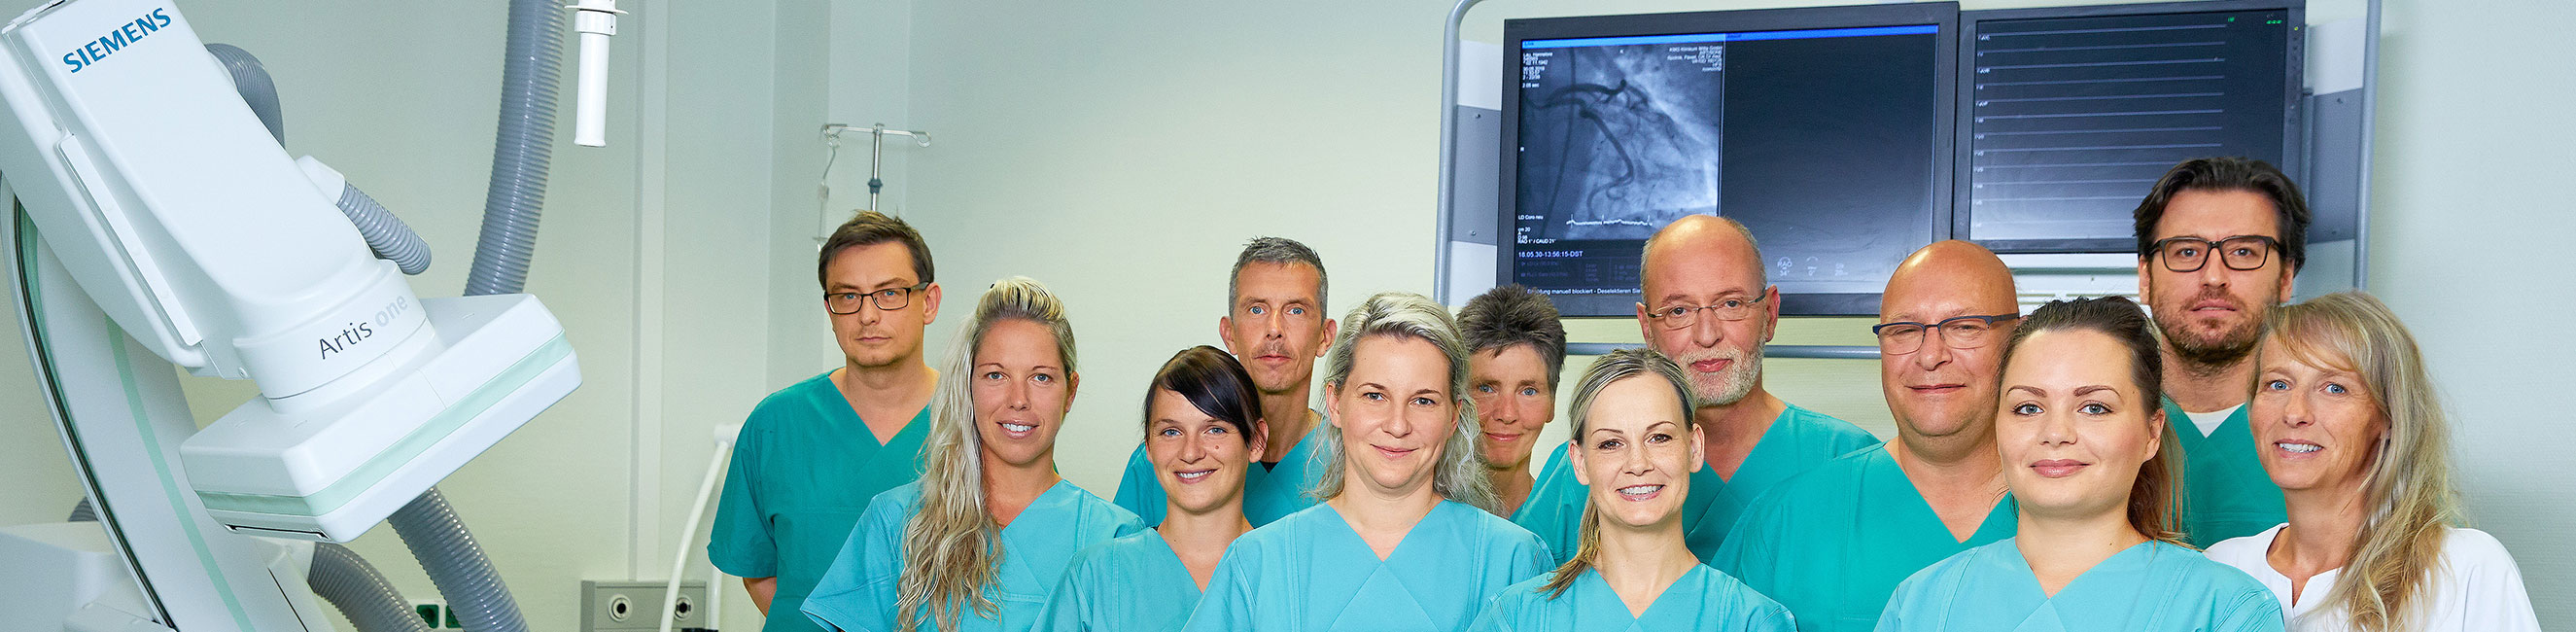 Chest Pain Unit (Brust-Schmerz-Abteilung) Teambild KMG Klinikum Wittstock